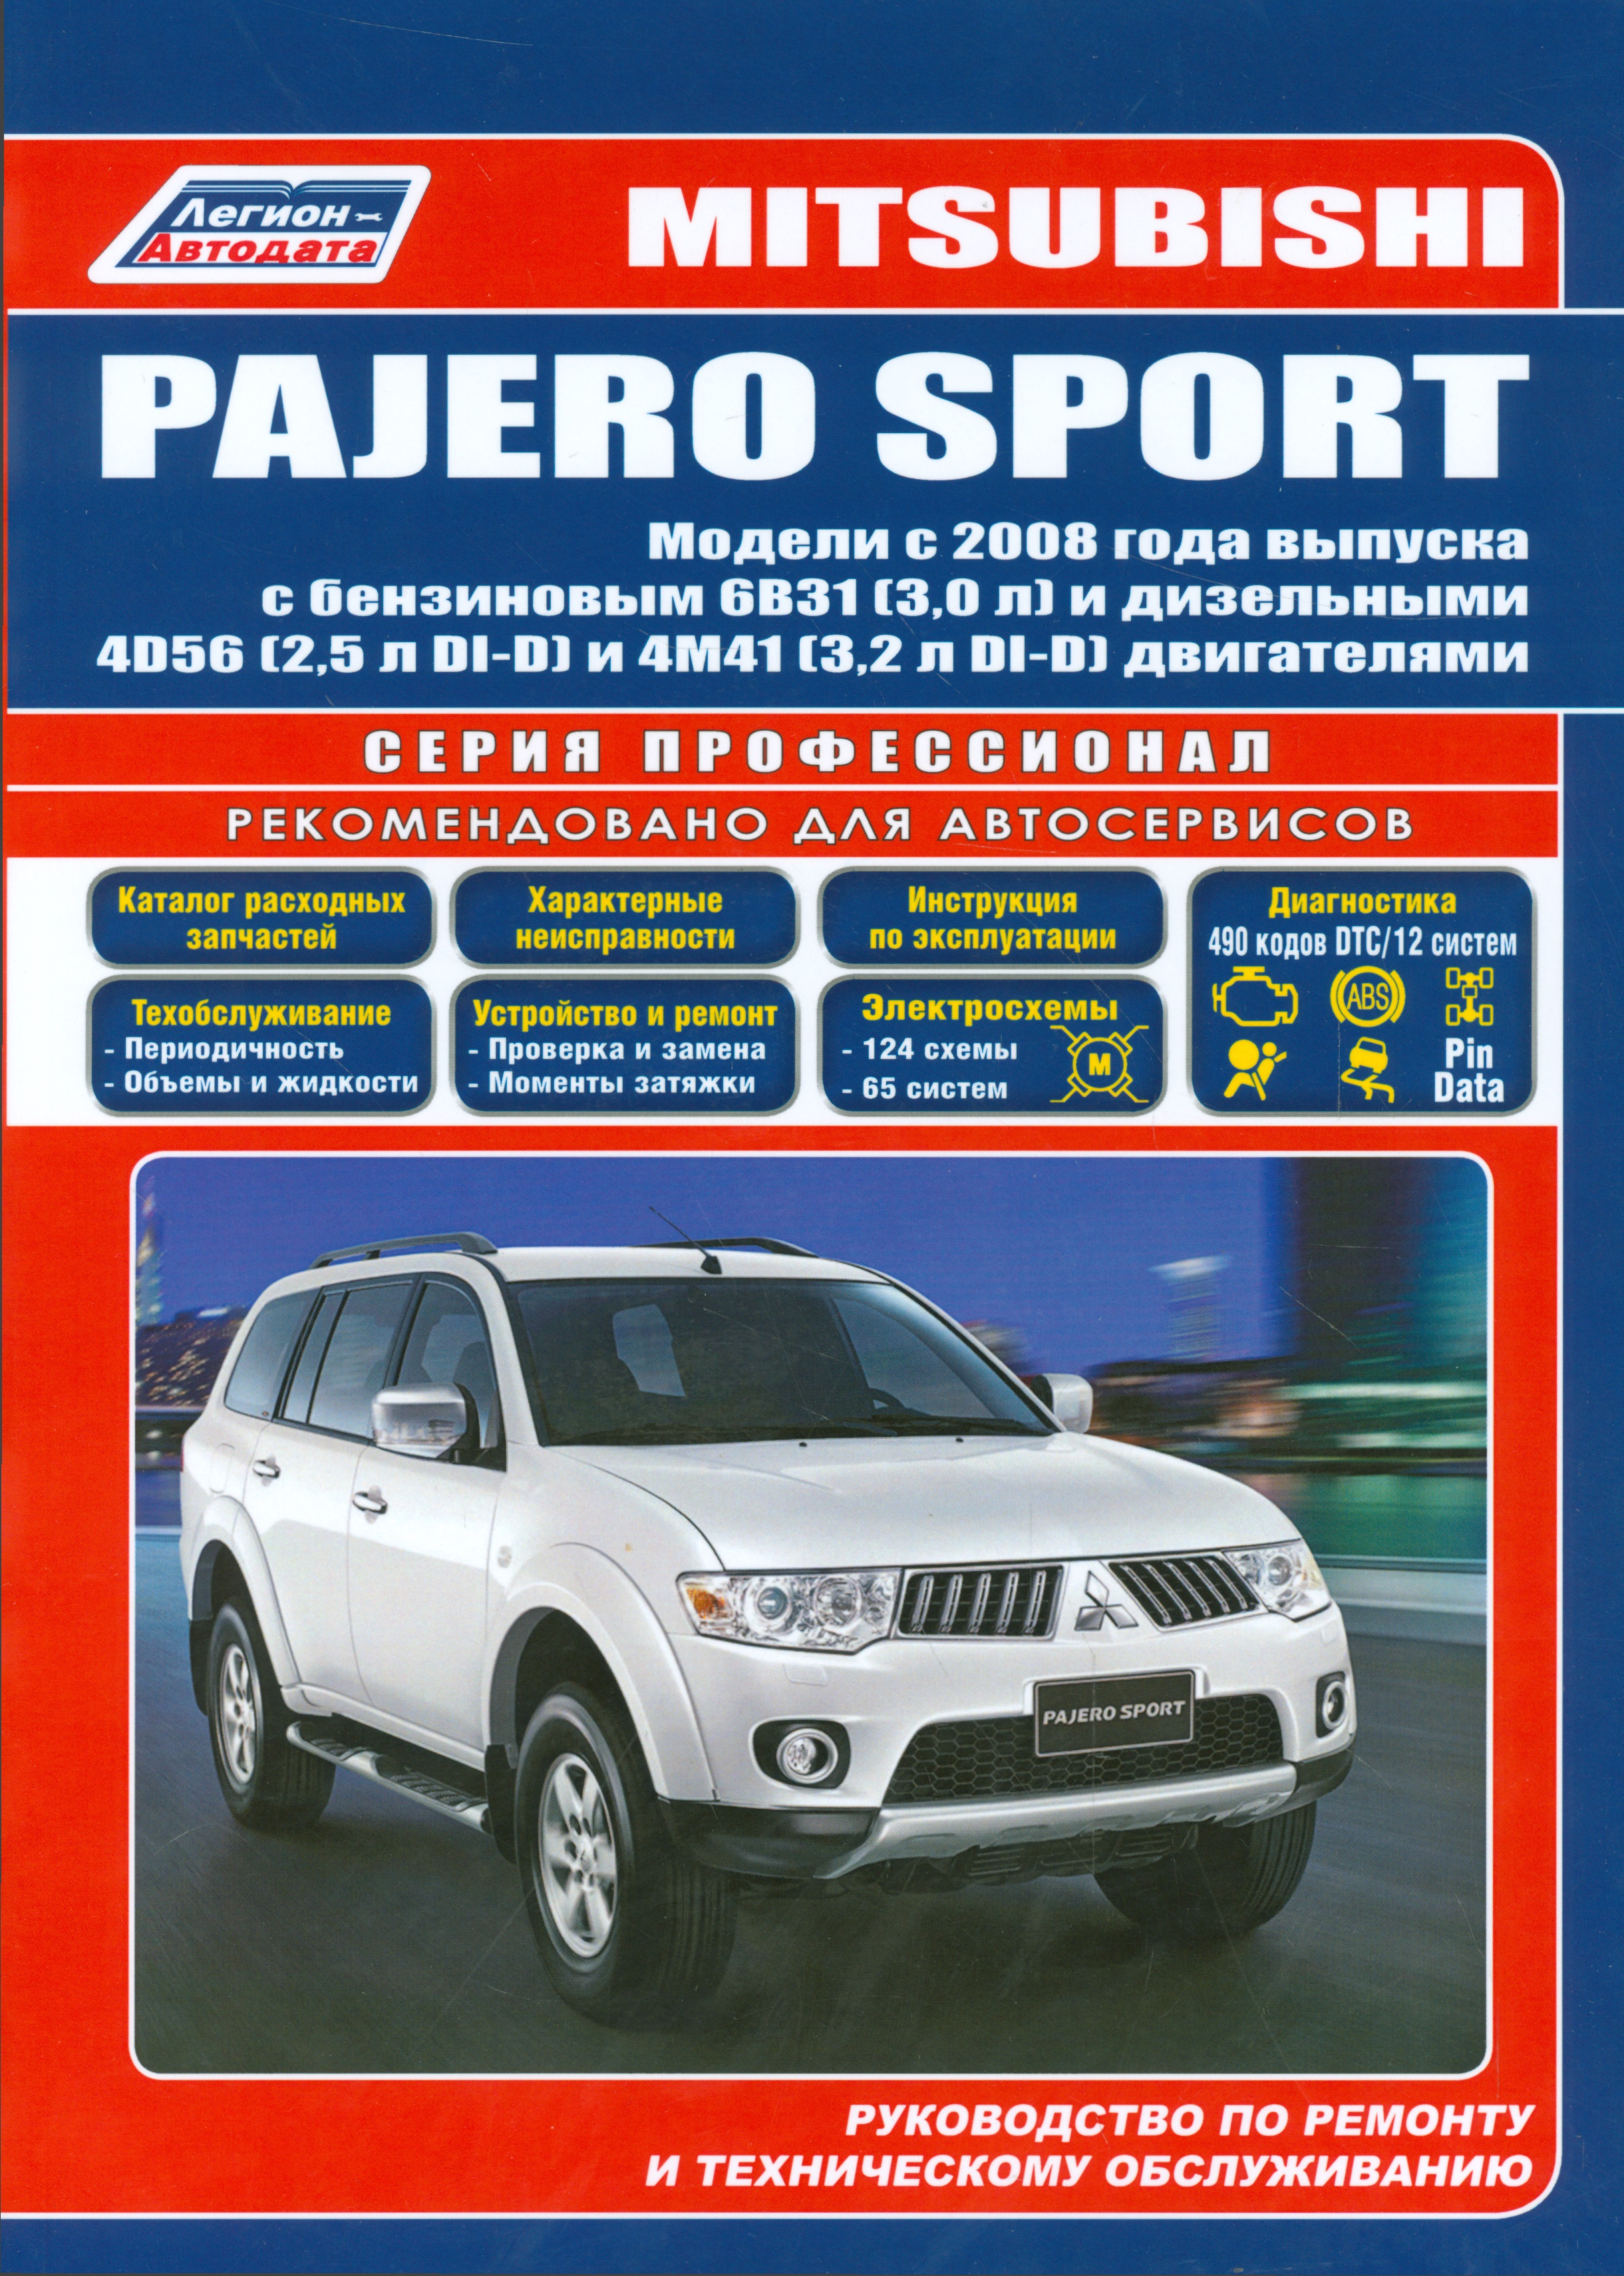 Mitsubishi Pajero Sport Мод. с 2008 г. вып. с бенз. 6В31 (3,0 л.) и диз. 4D56 (мПрофессионал)